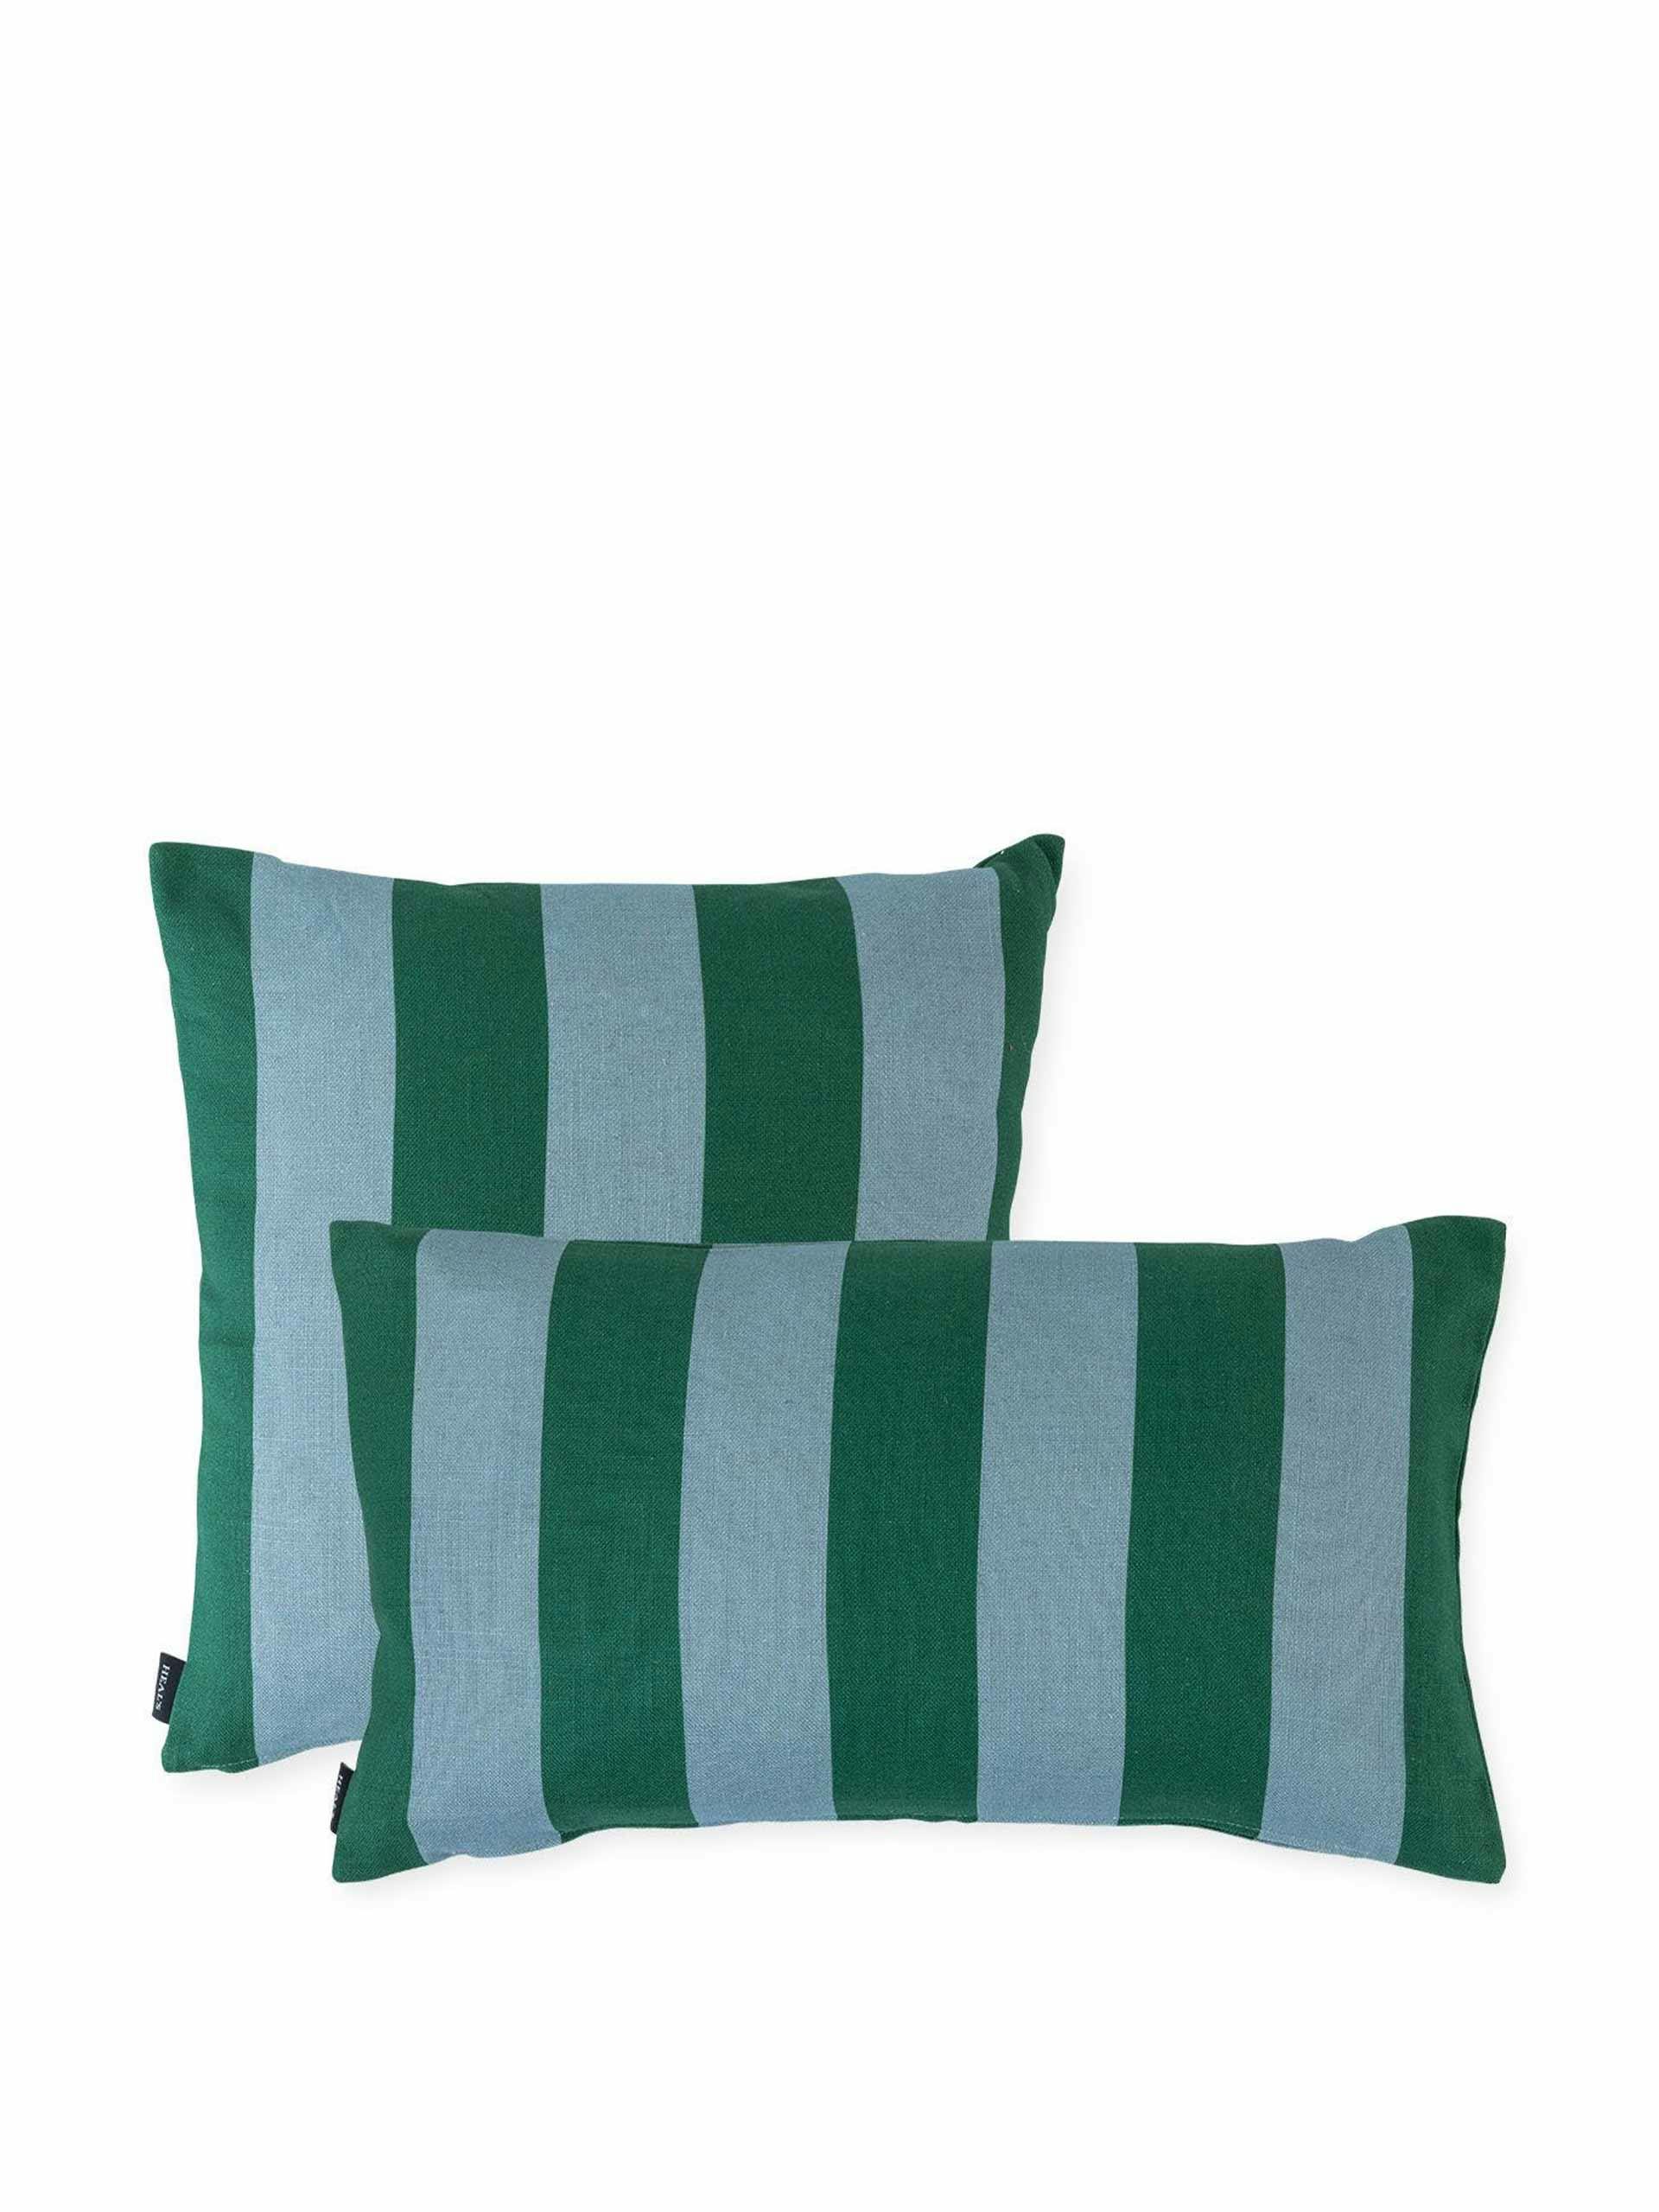 Blue green striped cushion